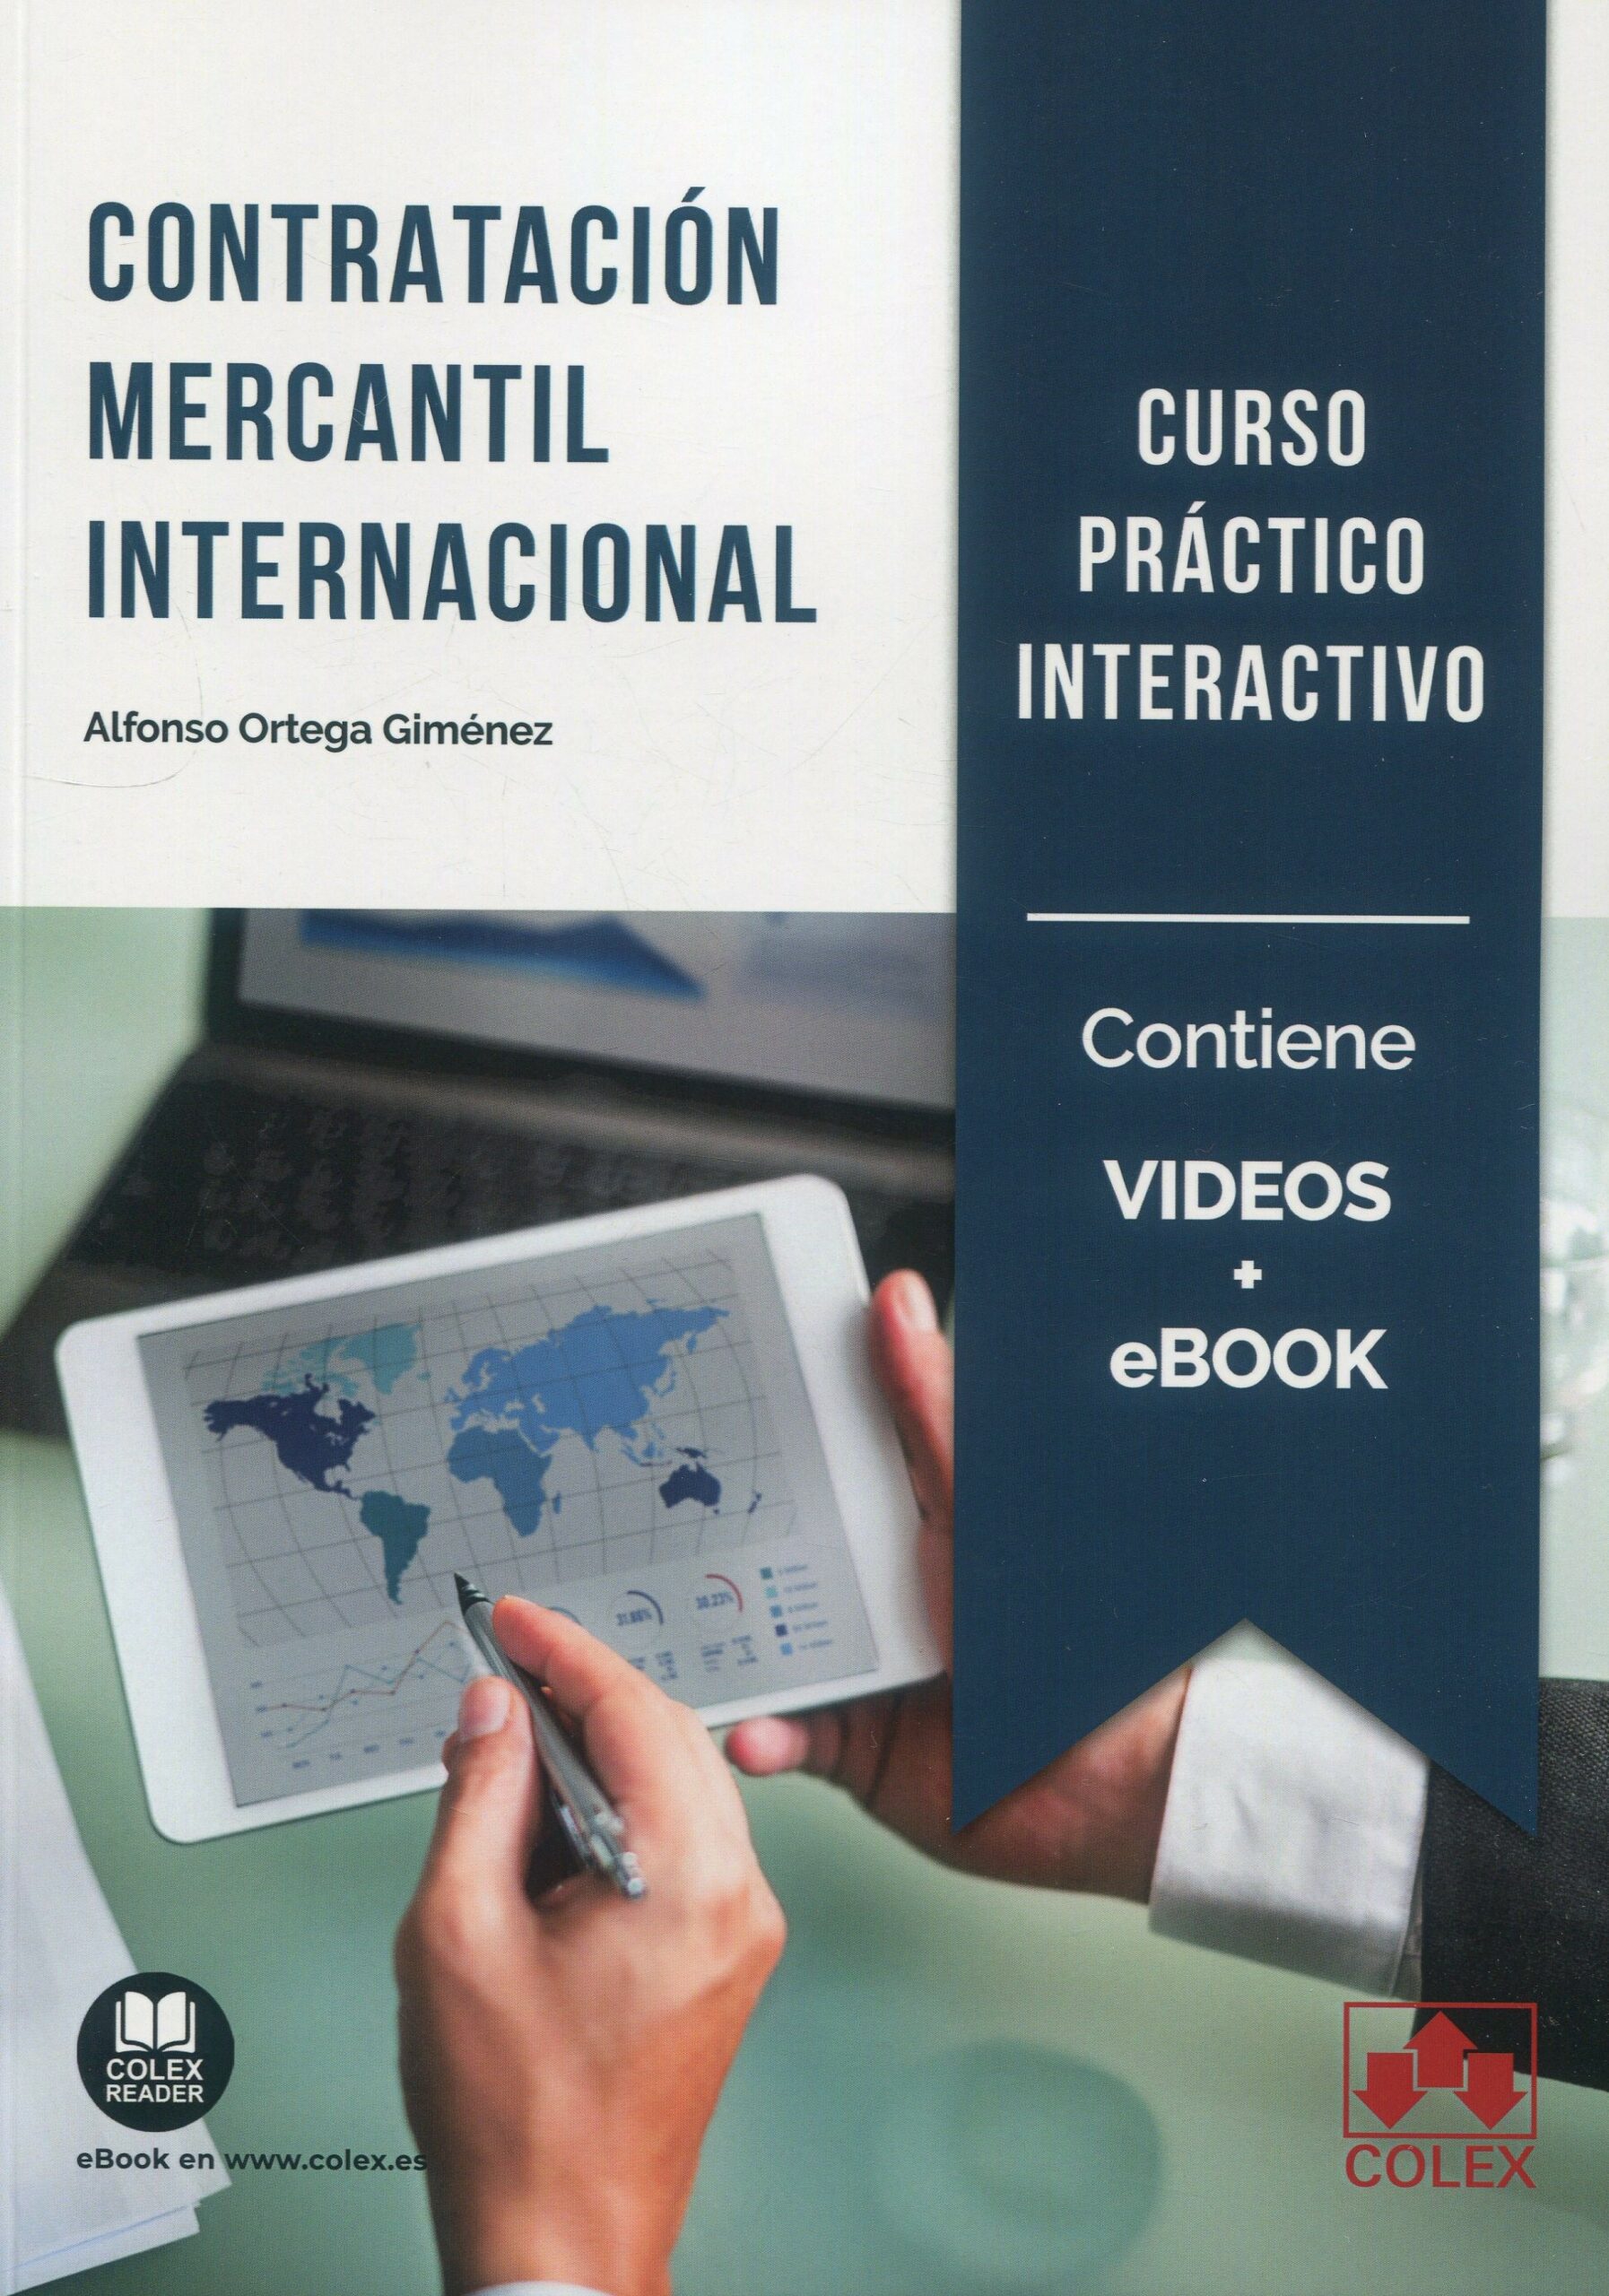 Contratación mercantil internacional. Curso práctico interactivo